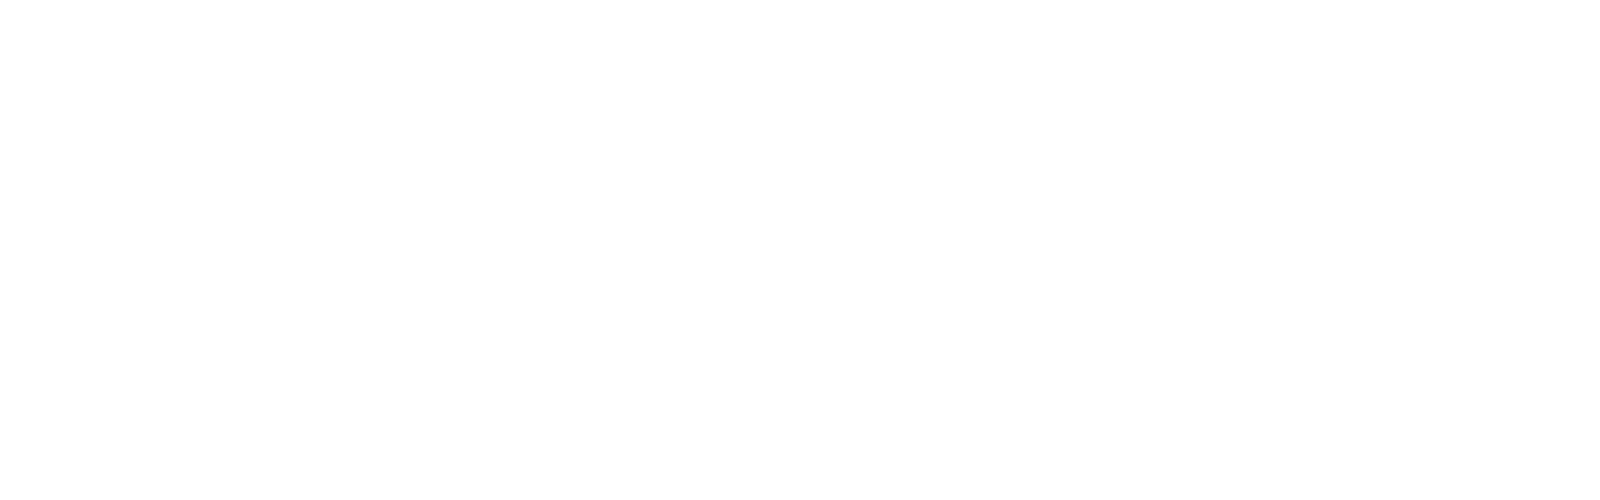 Logo de la empresa codely.webp